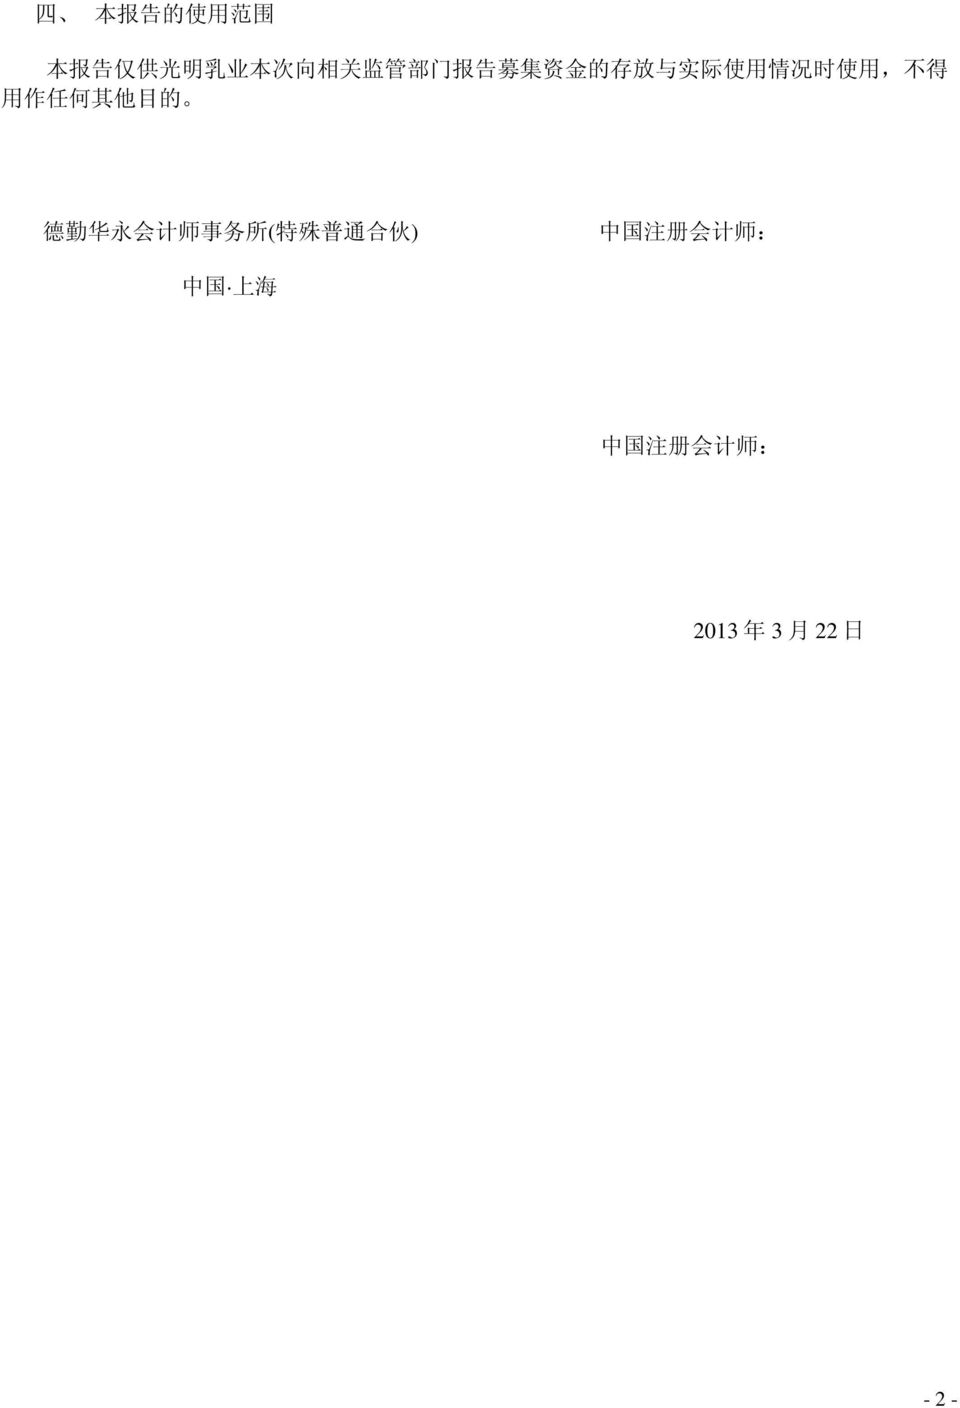 其 他 目 的 德 勤 华 永 会 计 师 事 务 所 ( 特 殊 普 通 合 伙 ) 中 国 注 册